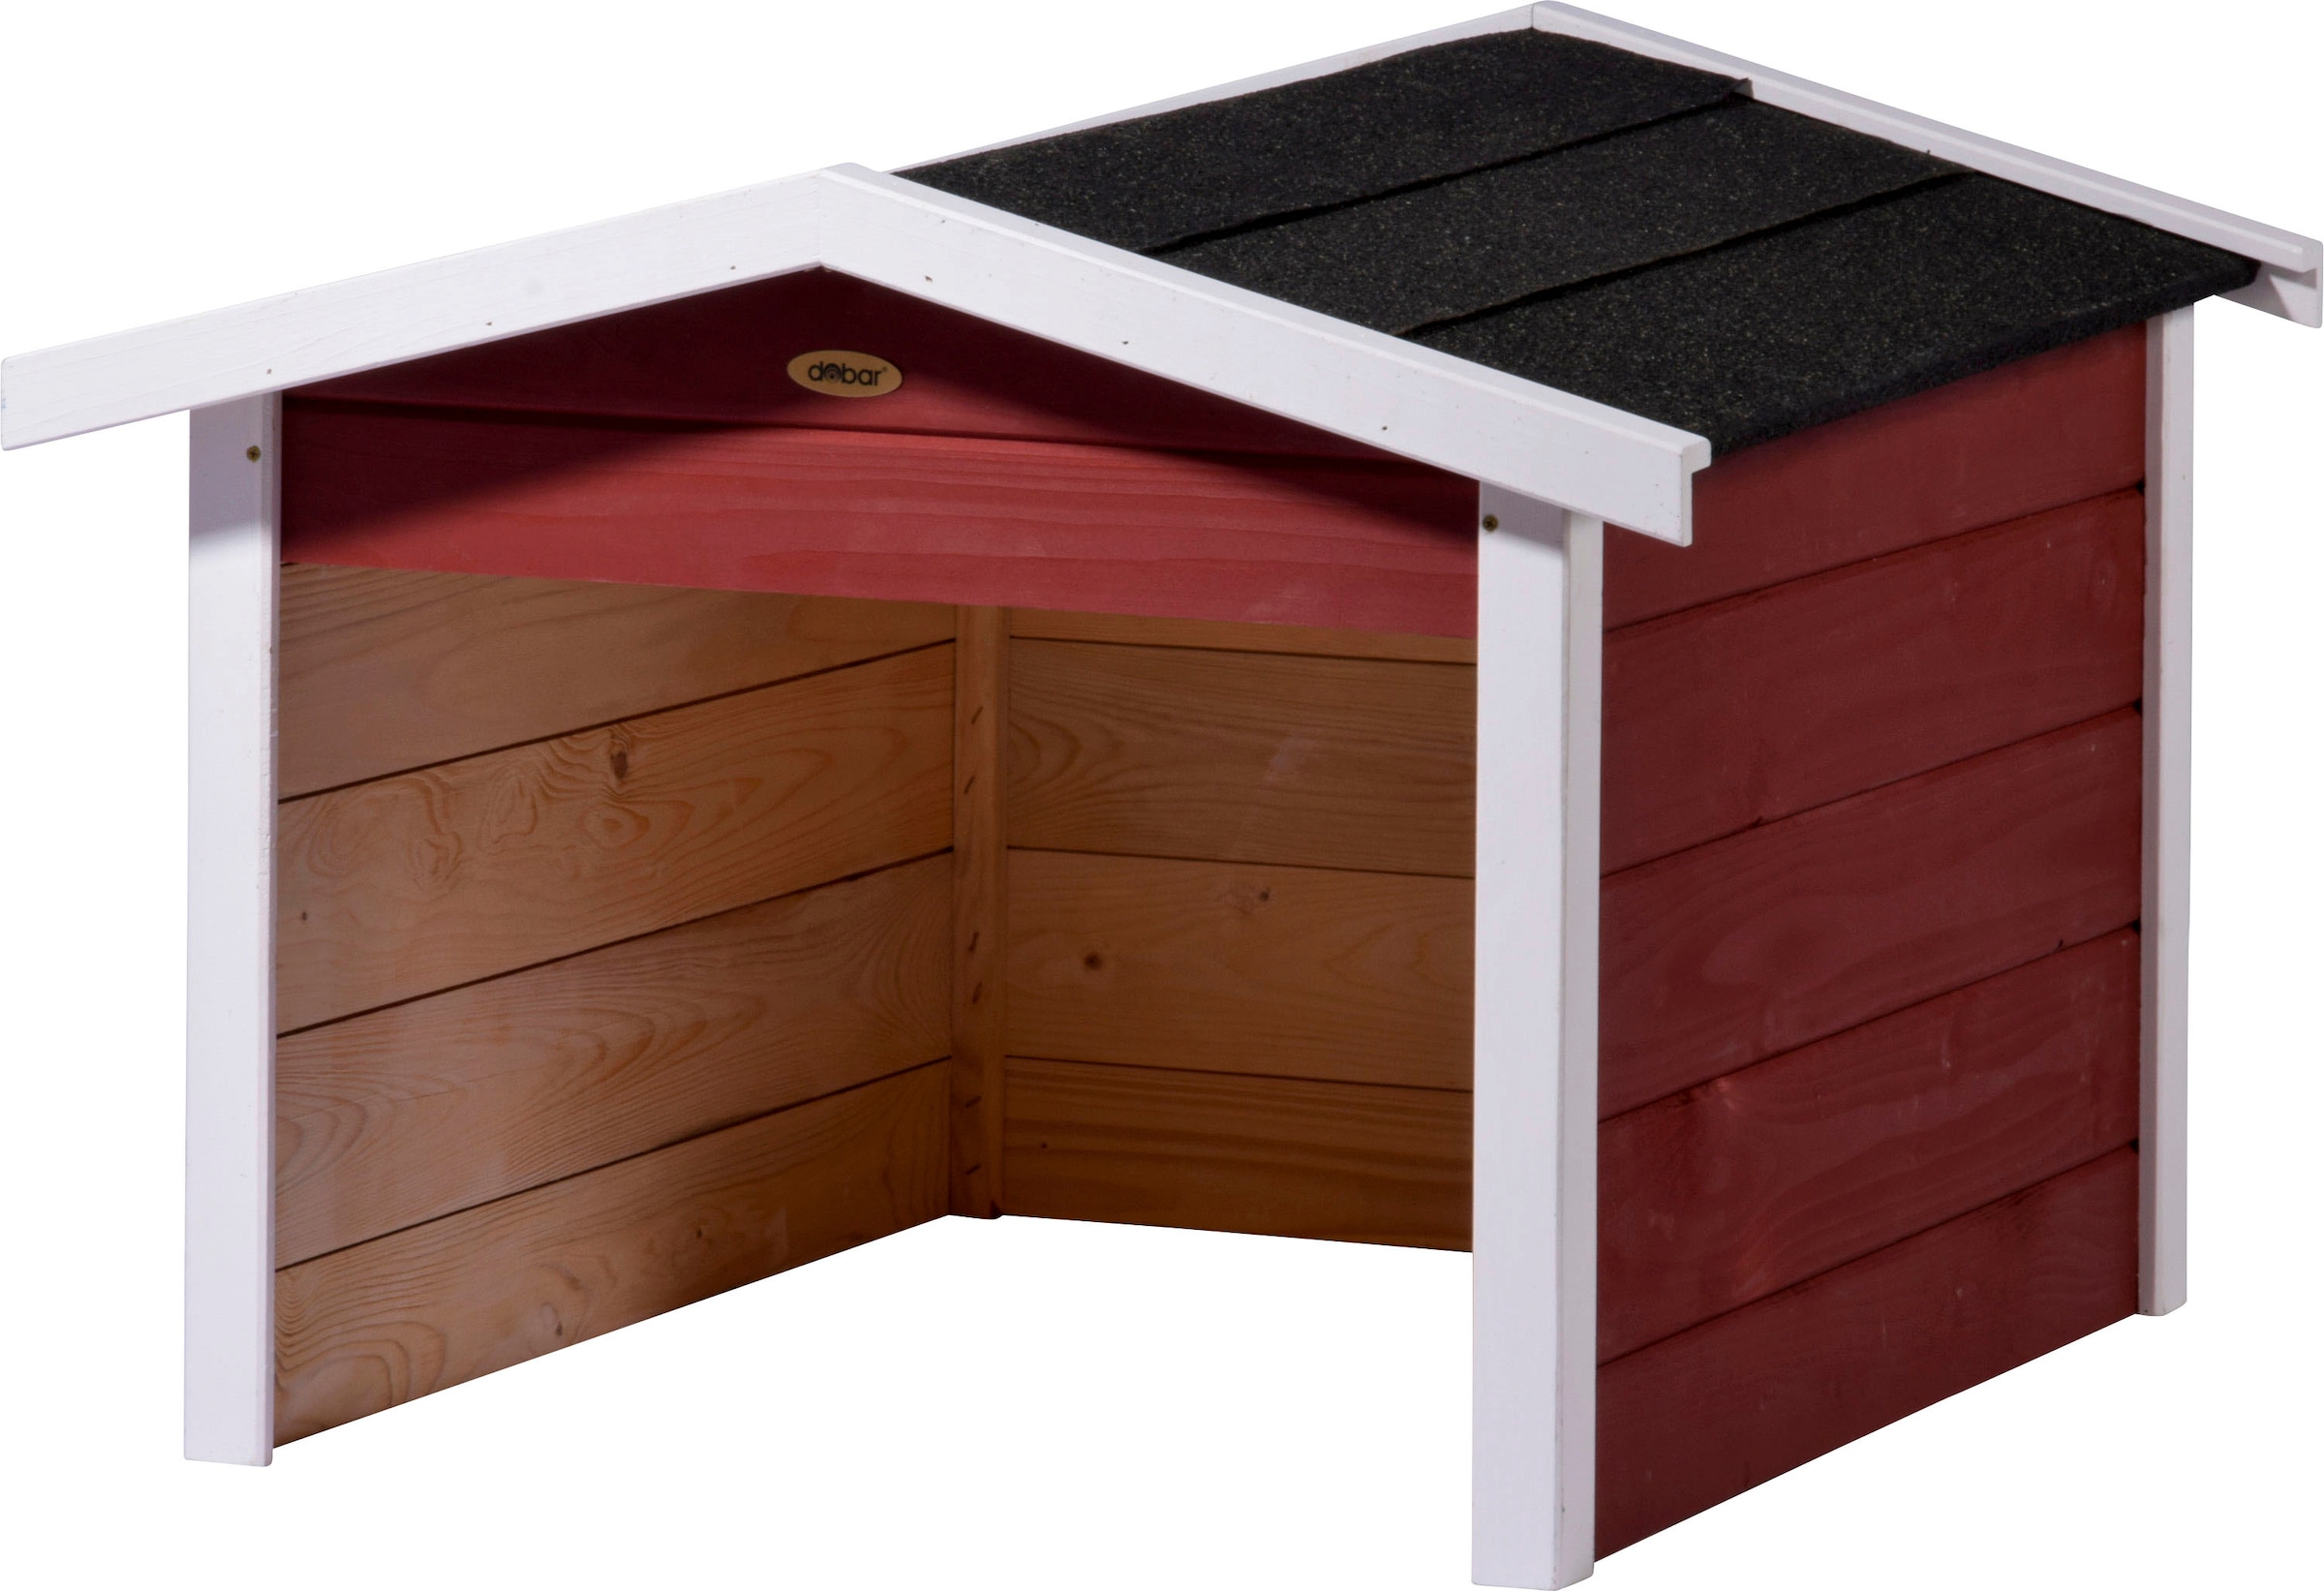 dobar Mähroboter-Garage, aus Holz in rot, mit Bitumen-Dach